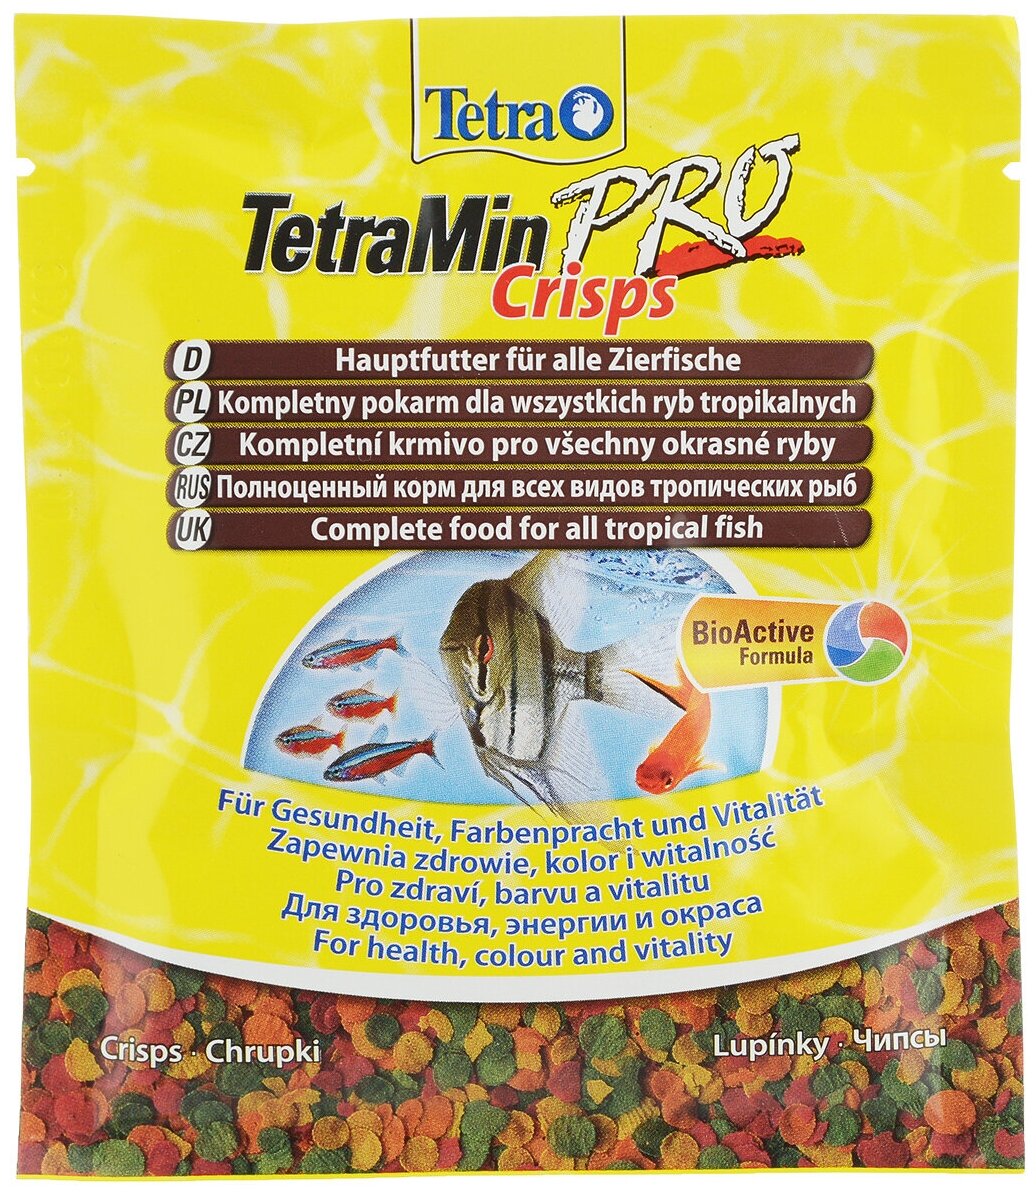 Min Pro Crisps 12гр, Tetra, хлопья для всех видов декоративных рыбок